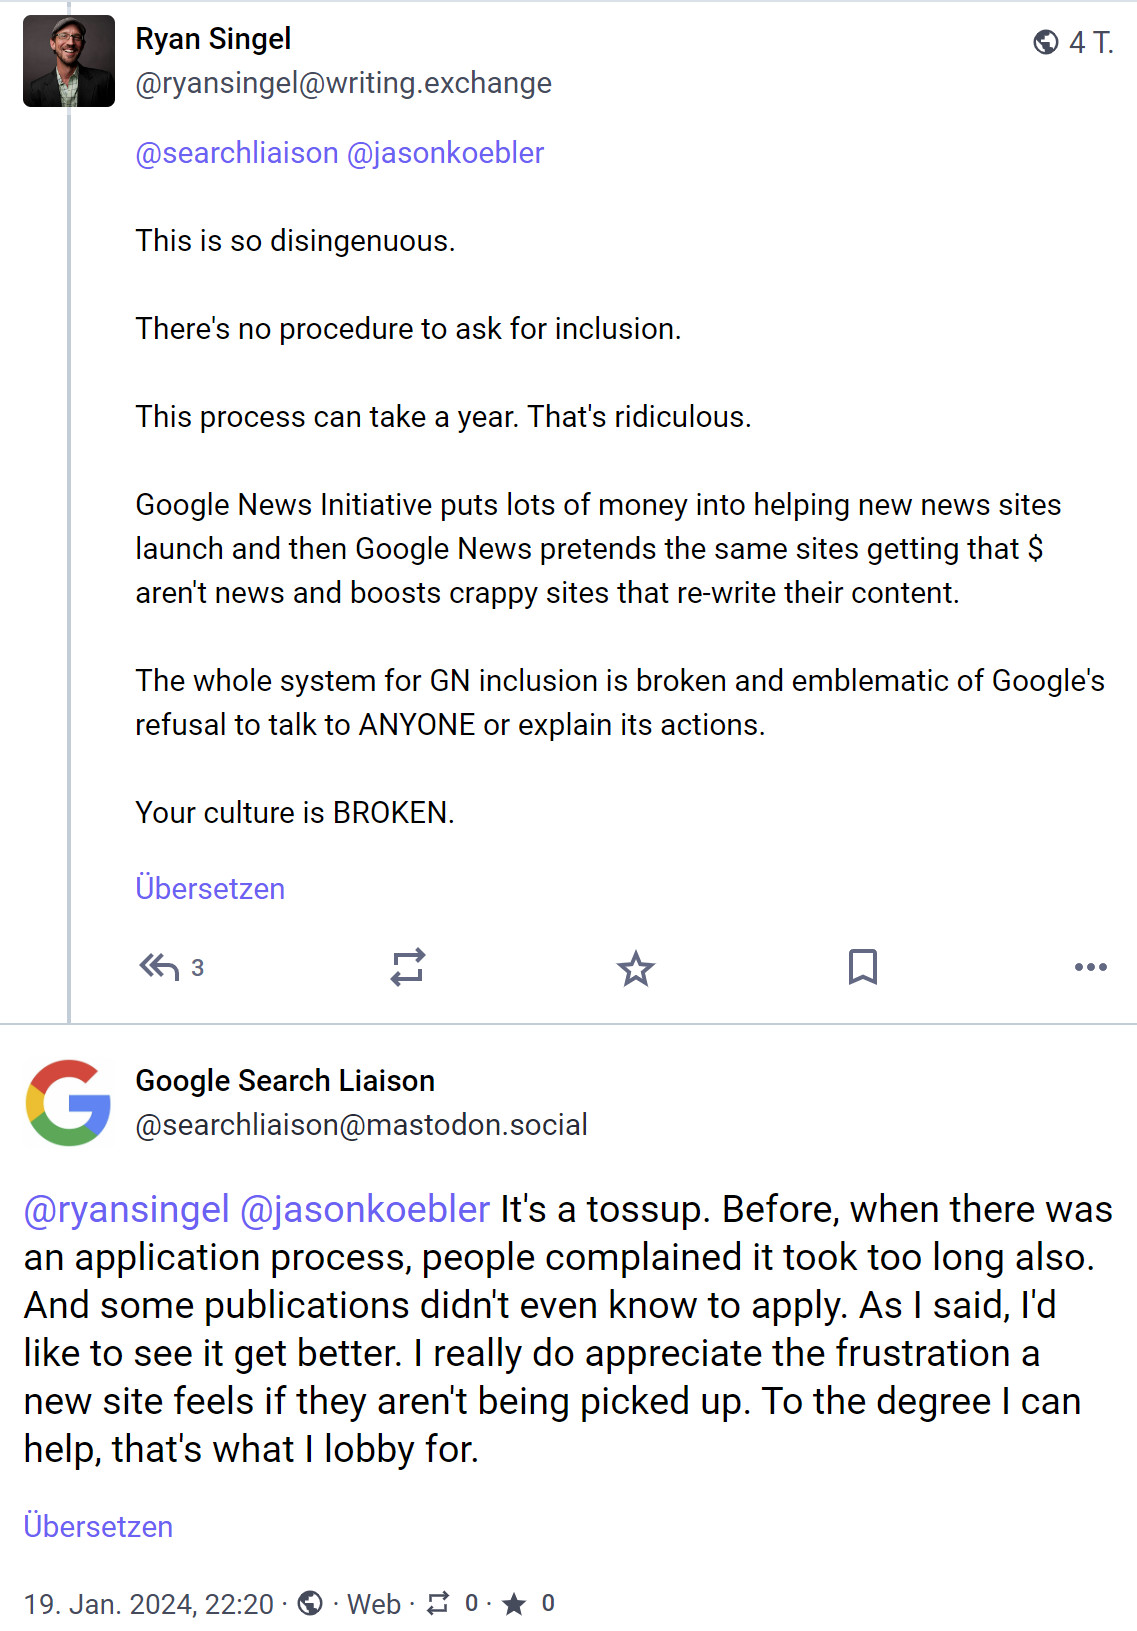 Google News: Kritik an Zulassungsprozess